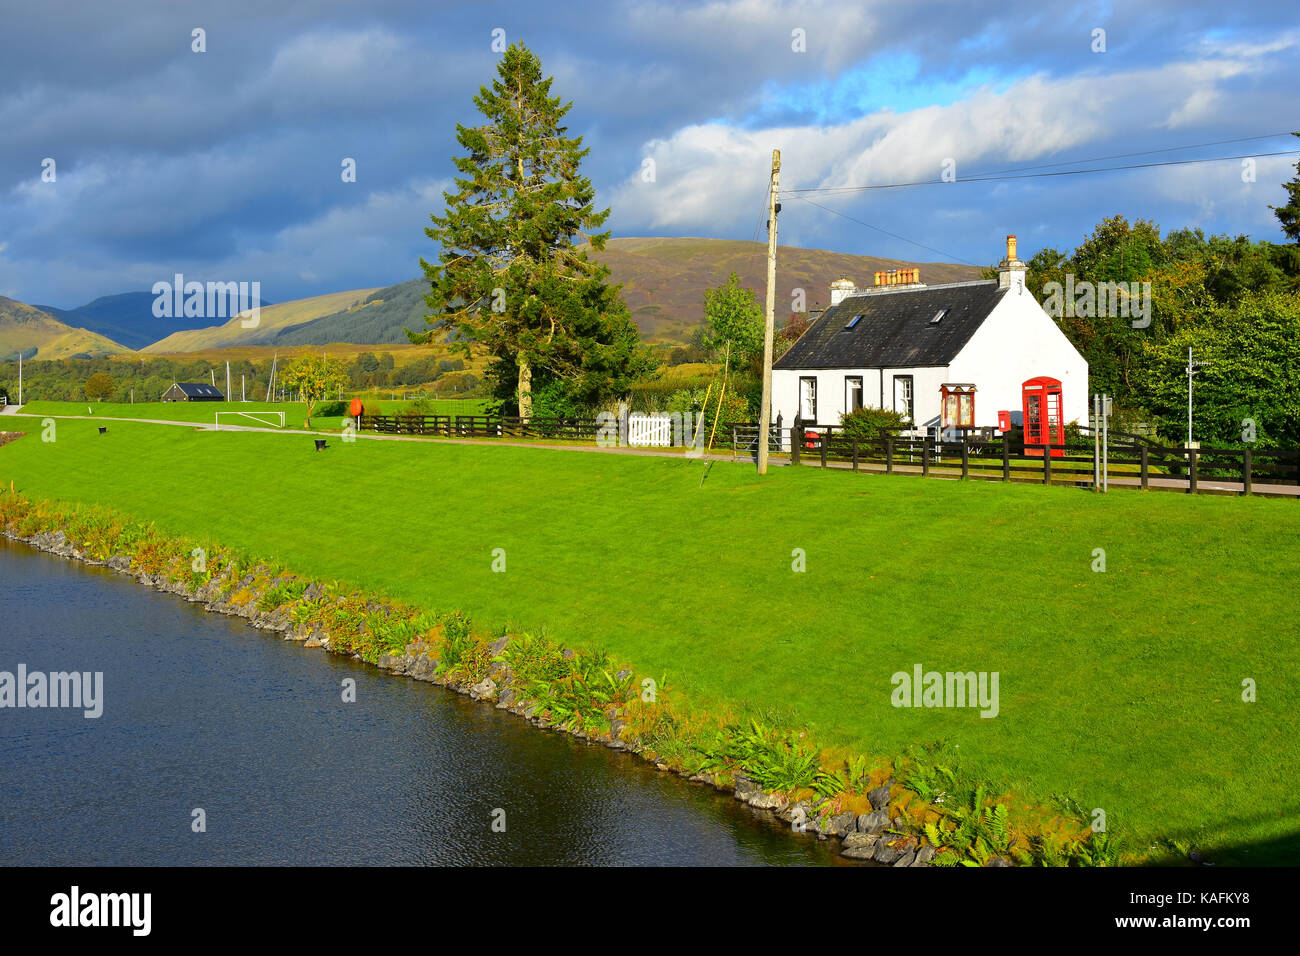 Kanal und Häuschen im Gairlochy - Schottland Stockfoto